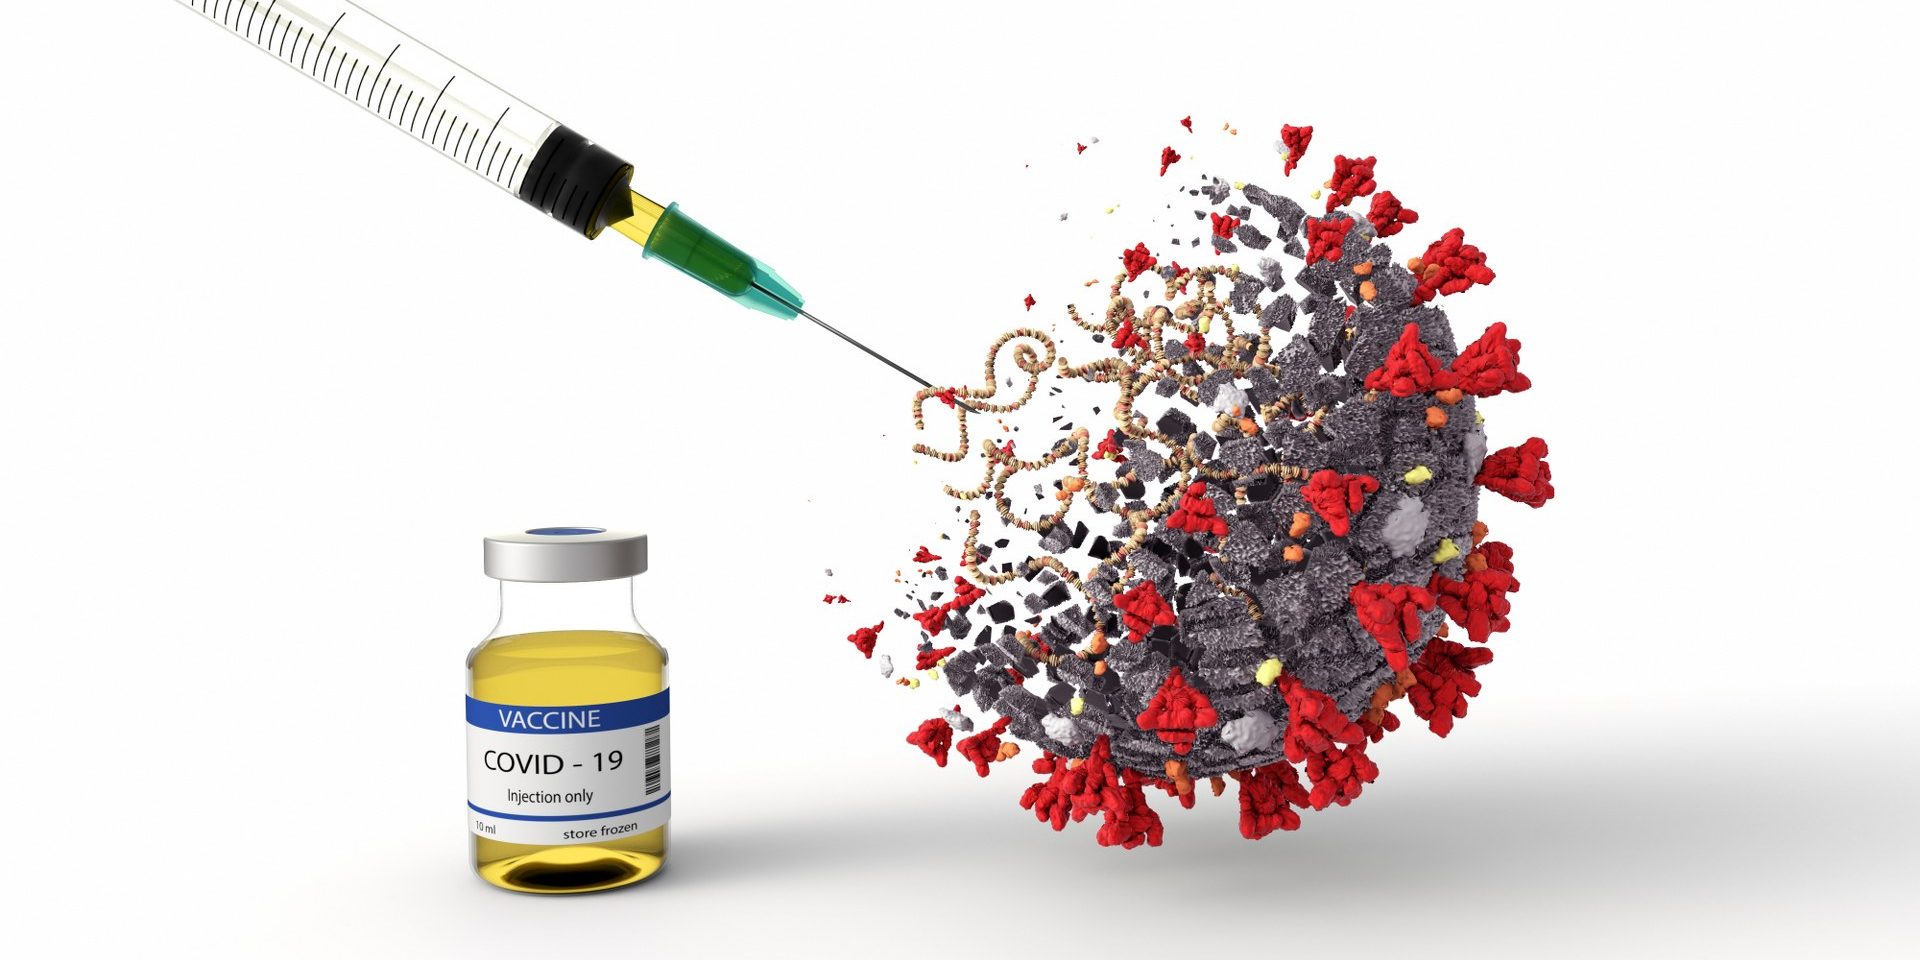 Pan-corona: Αυτό θα είναι το νέο εμβόλιο για τον Covid-19 – Κούρσα των εταιρειών για το μονοπώλιο